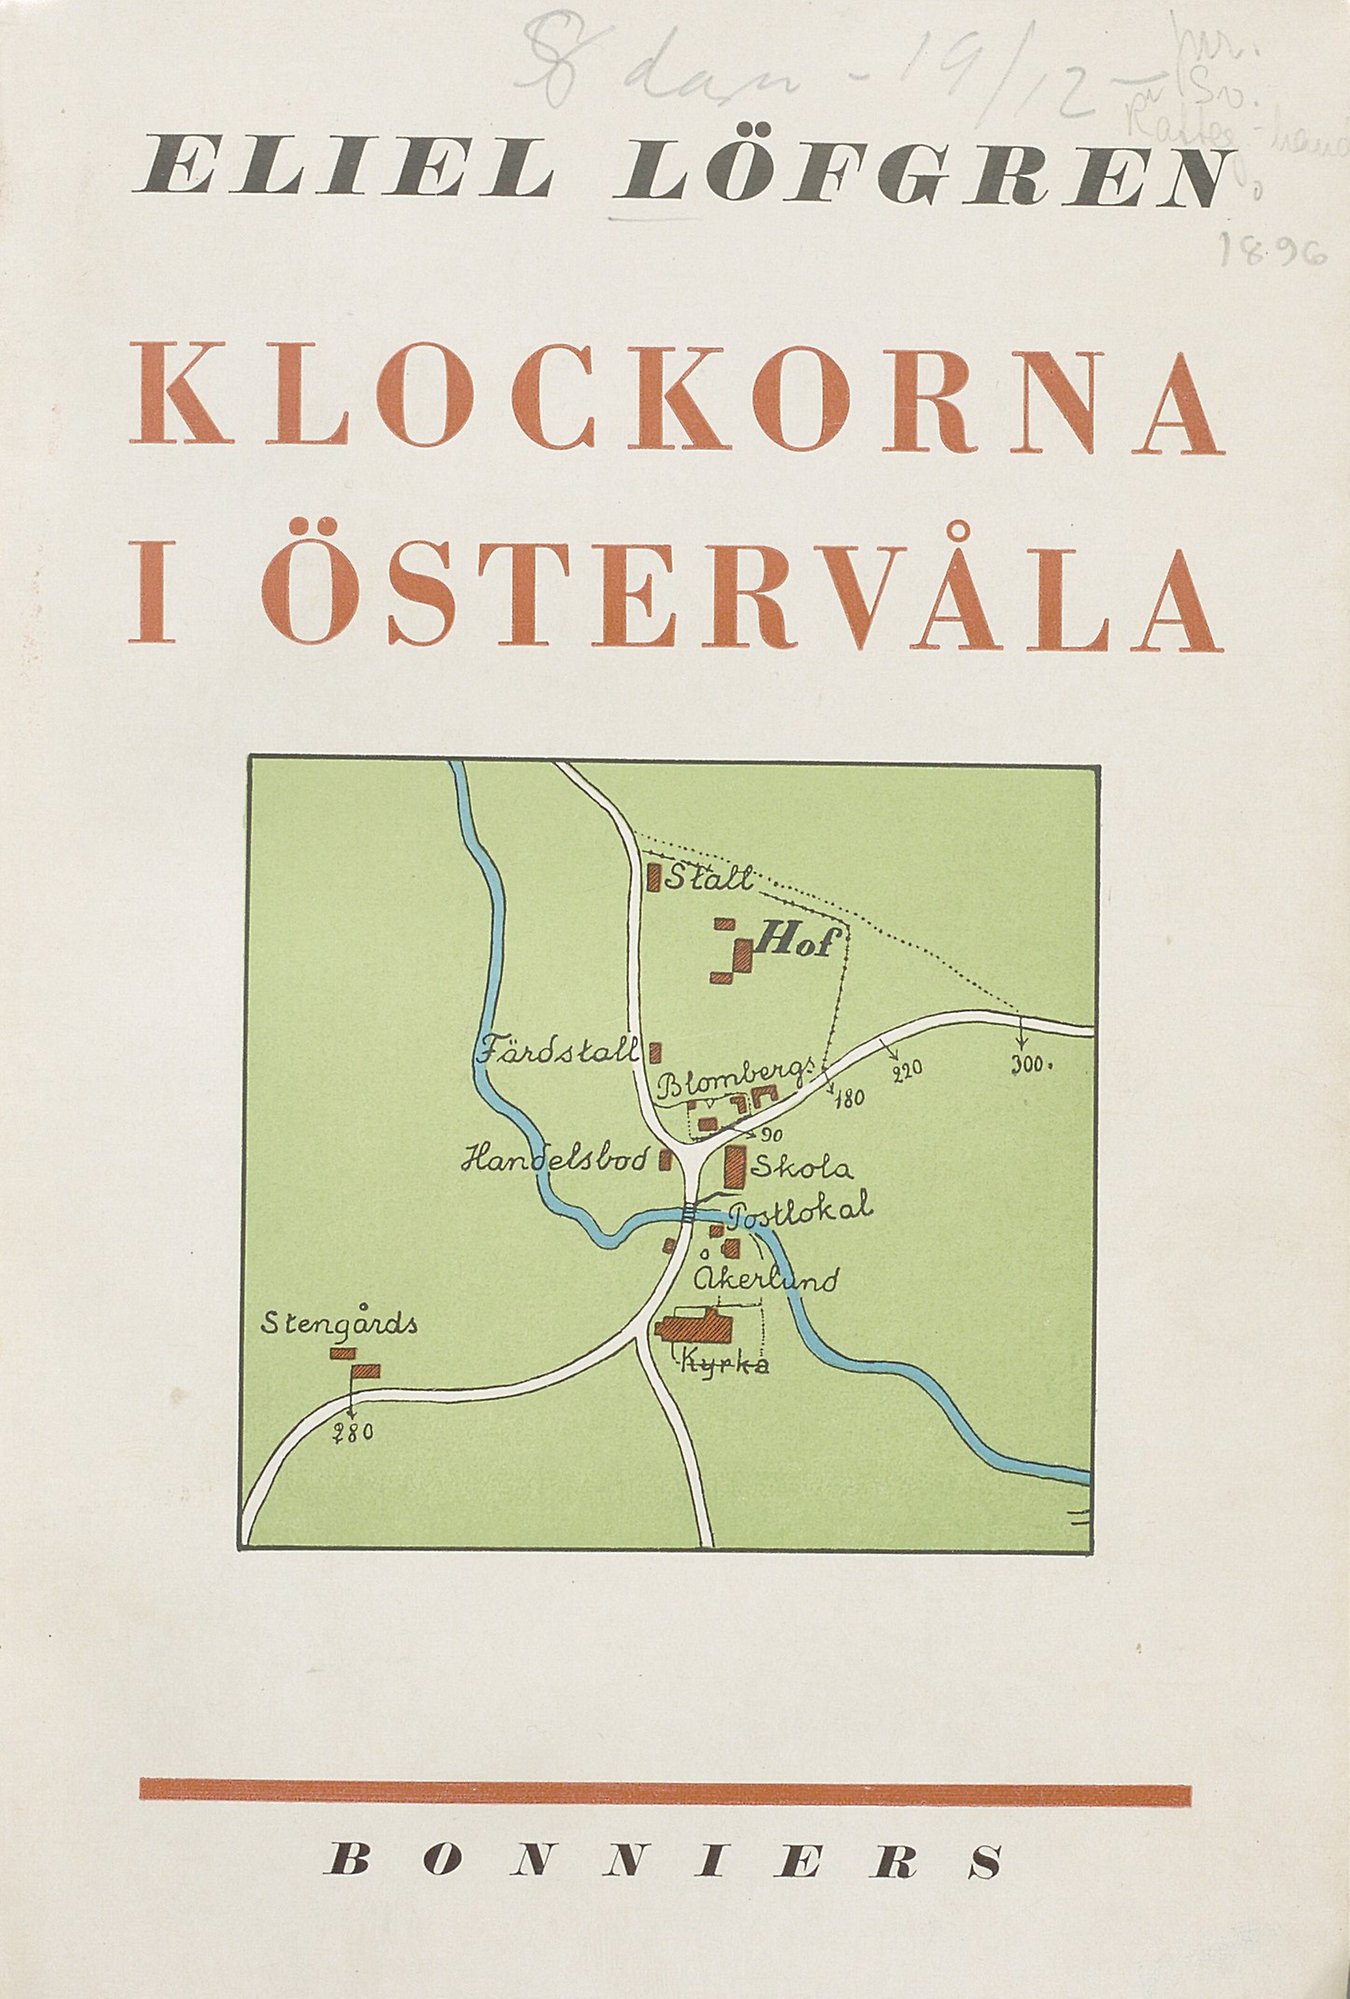 Bokomslag till "Klockorna i Östervåla" med karta i grönt, vitt och blått. 